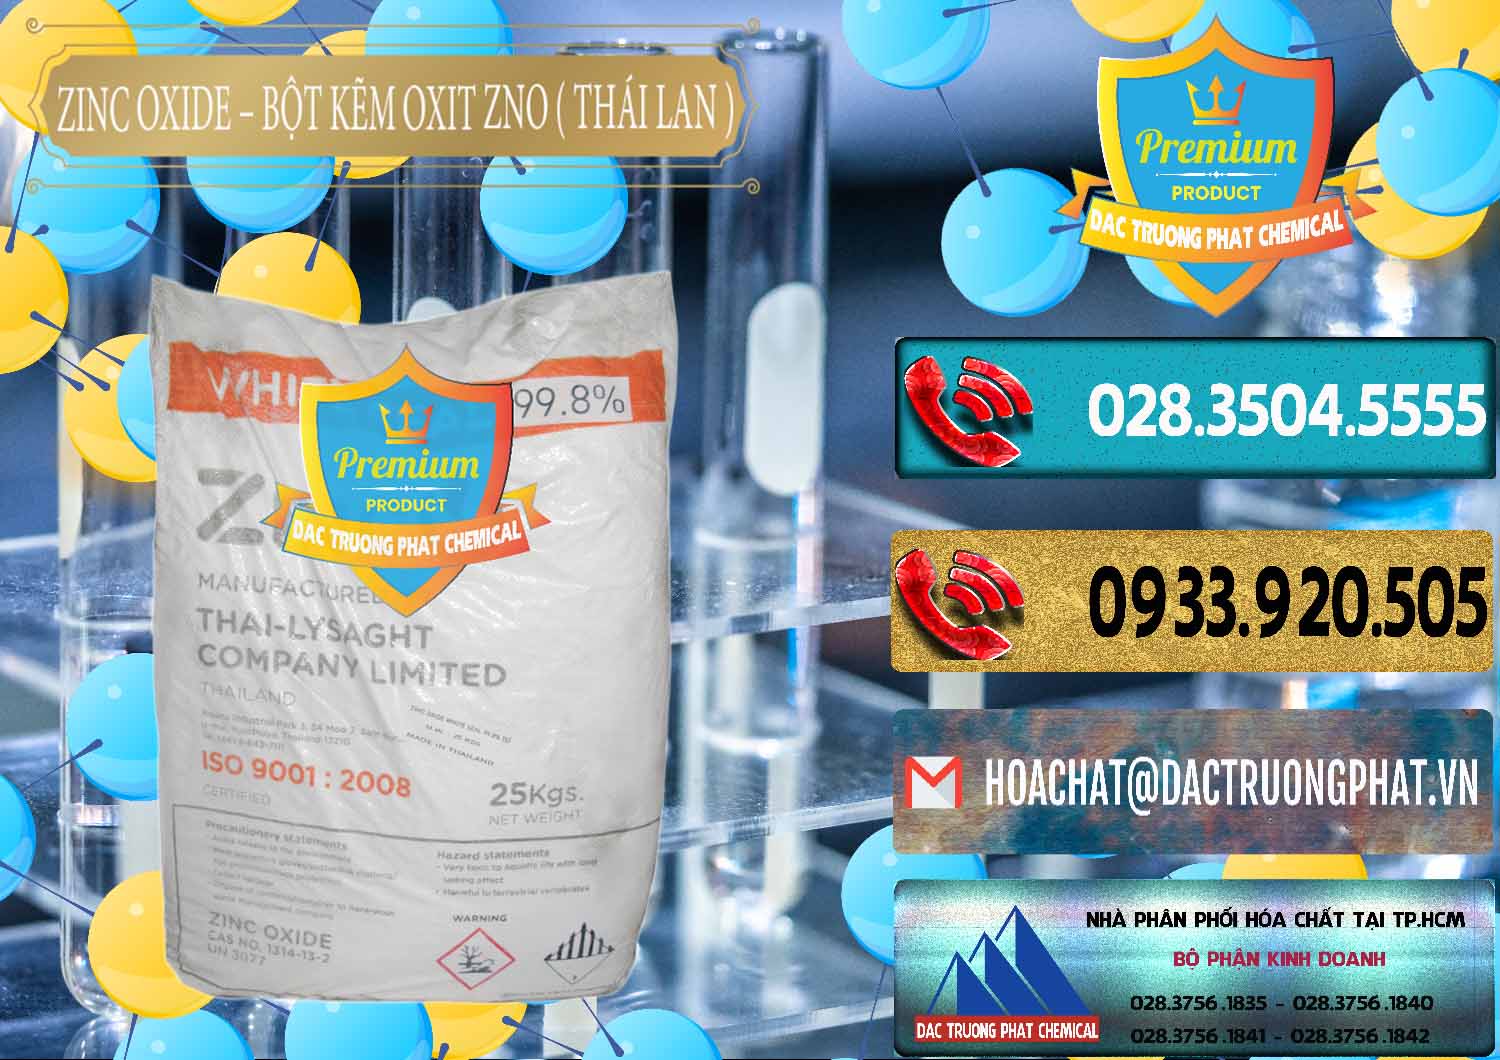 Nơi bán Zinc Oxide - Bột Kẽm Oxit ZNO Thái Lan Thailand - 0181 - Chuyên cung cấp - phân phối hóa chất tại TP.HCM - hoachatdetnhuom.com